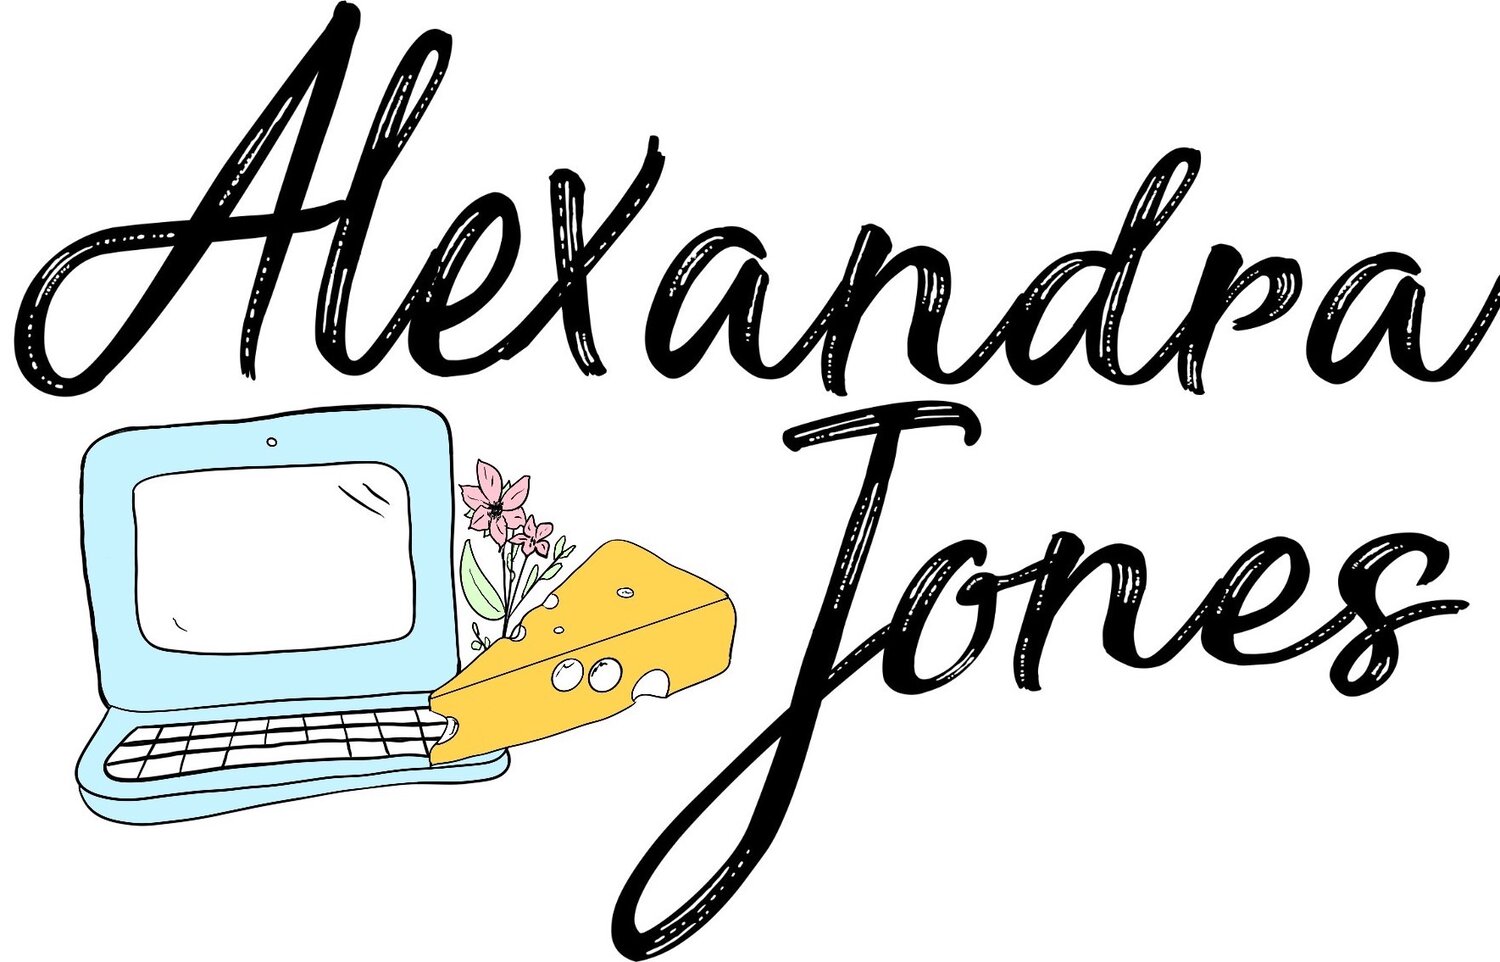 Alexandra Jones